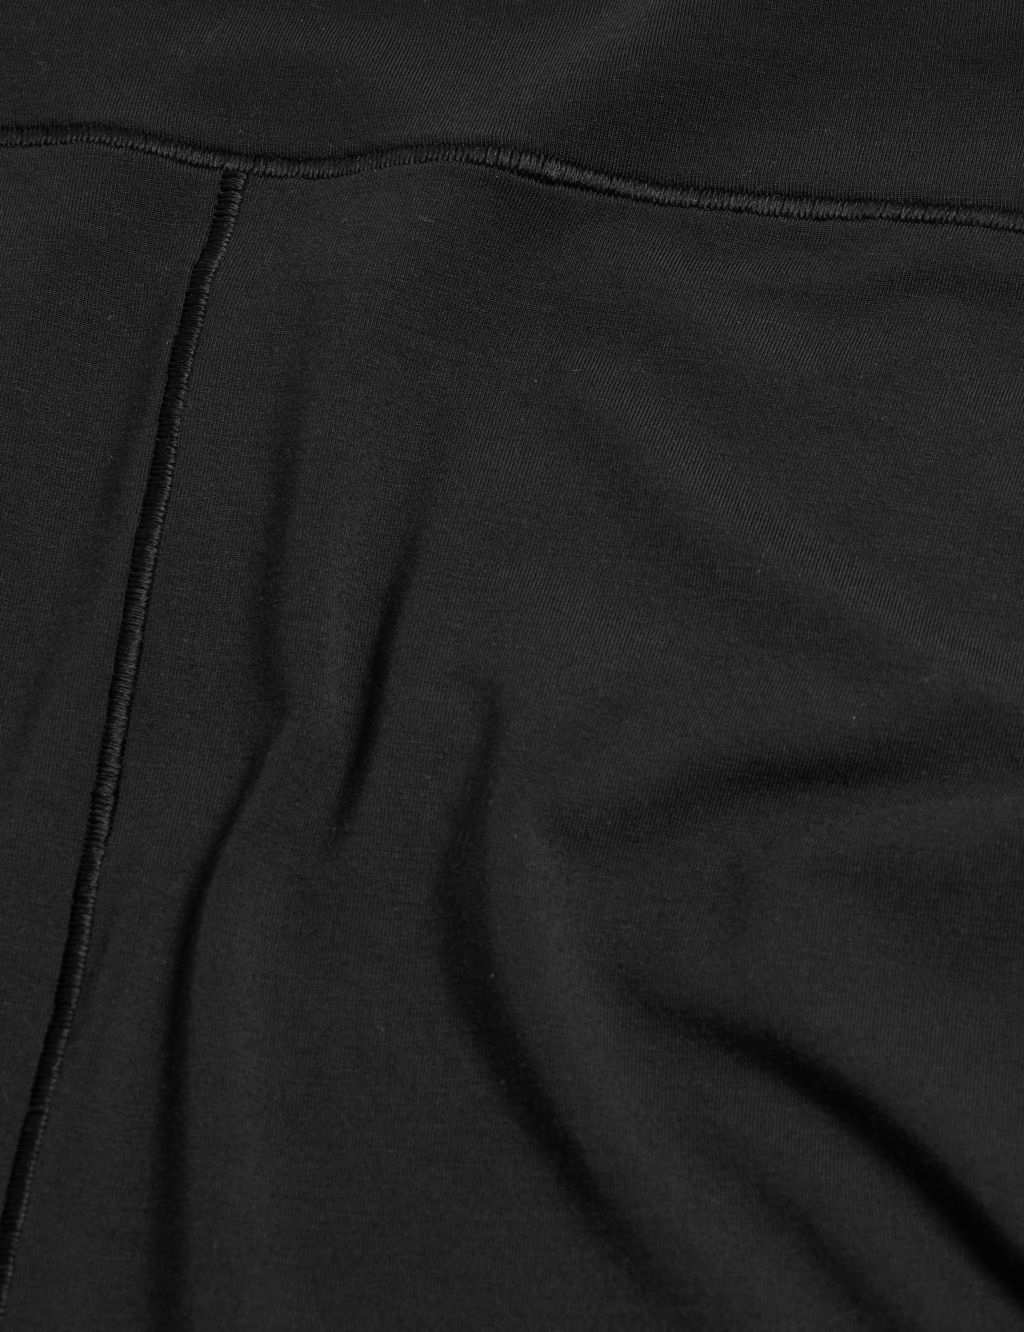 Flexifit™ High Rise Sleep Knicker Shorts 5 of 5